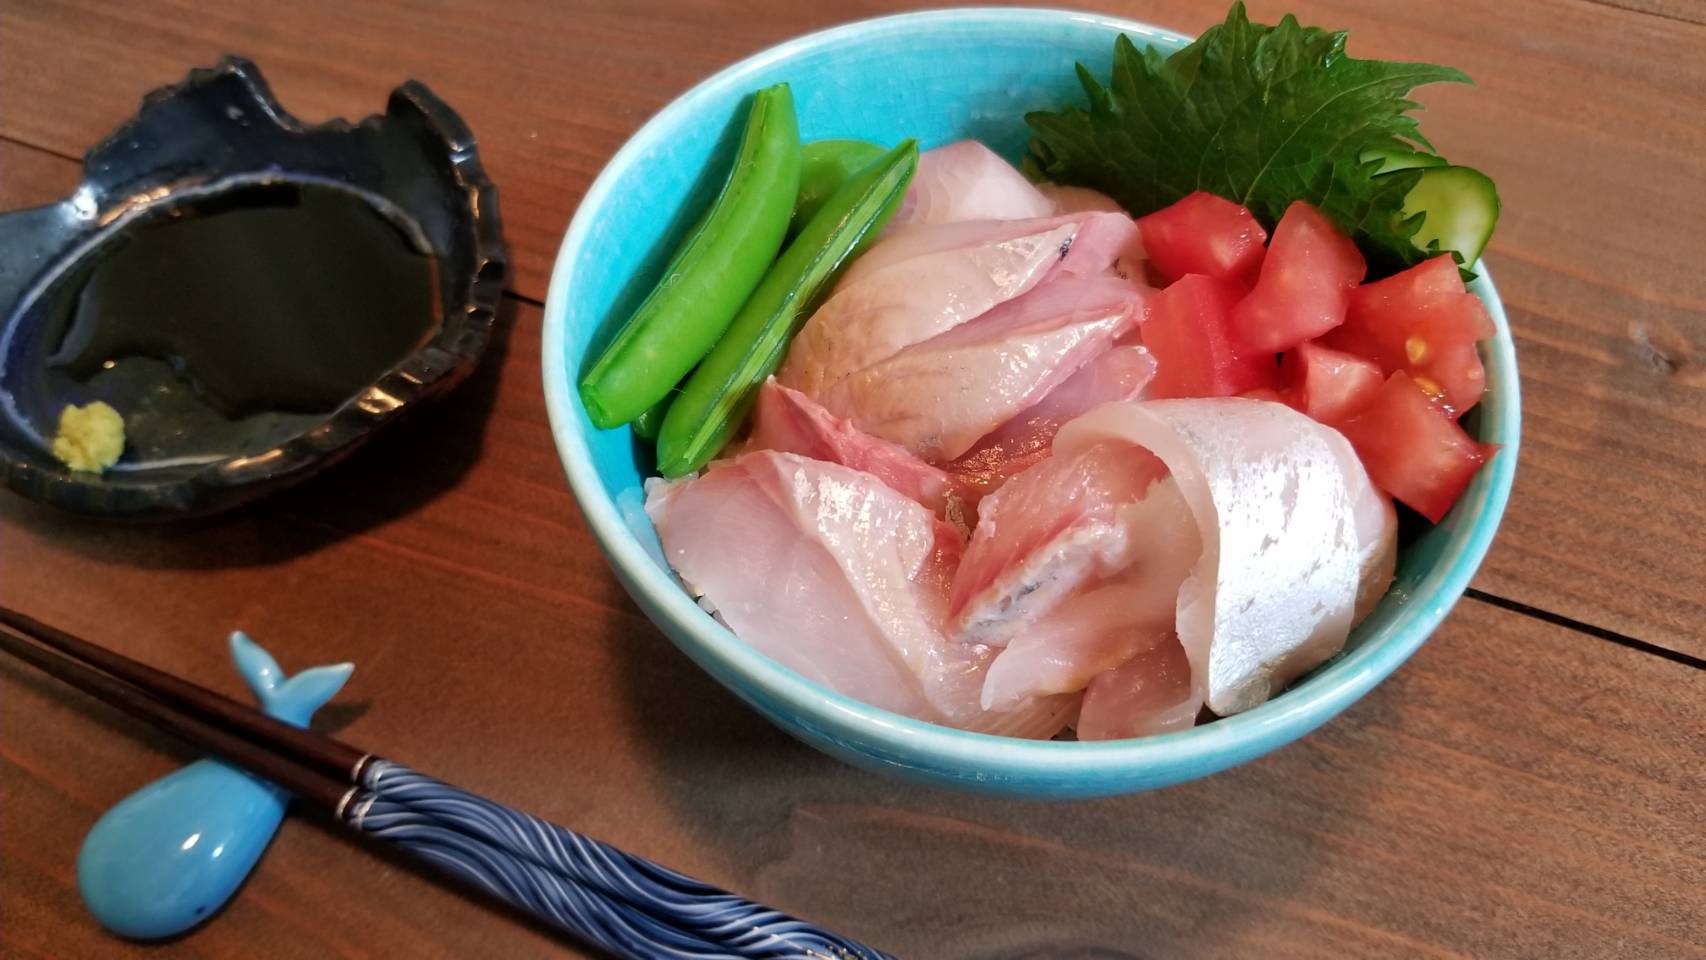 カイワリの最適熟成日数は刺身なら3日 寿司なら4日かな おさかなアウトドア